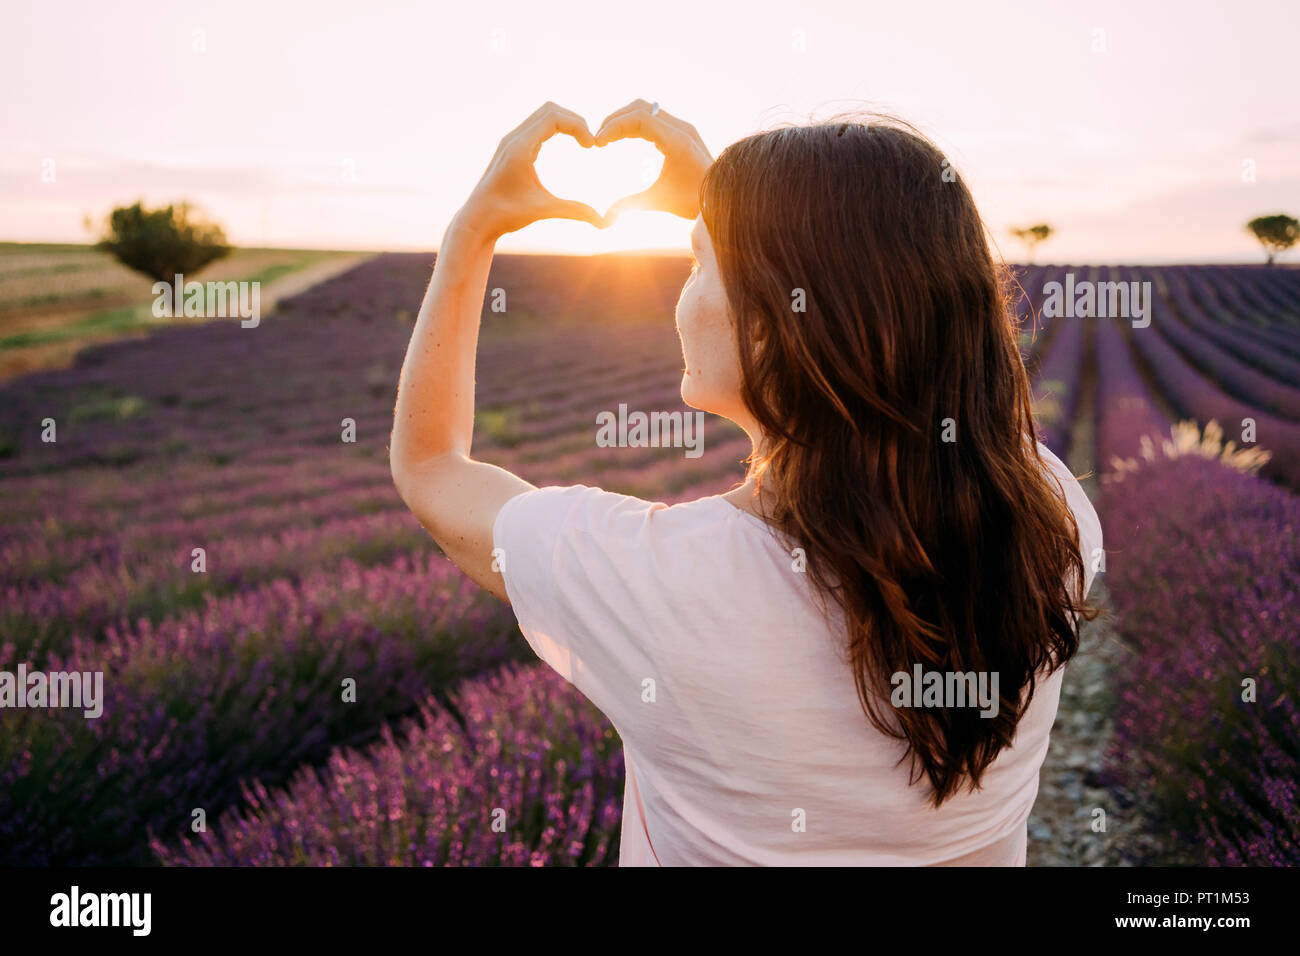 Francia, Valensole, vista posteriore della donna cuore di sagomatura con le sue mani nella parte anteriore del campo di lavanda al tramonto Foto Stock